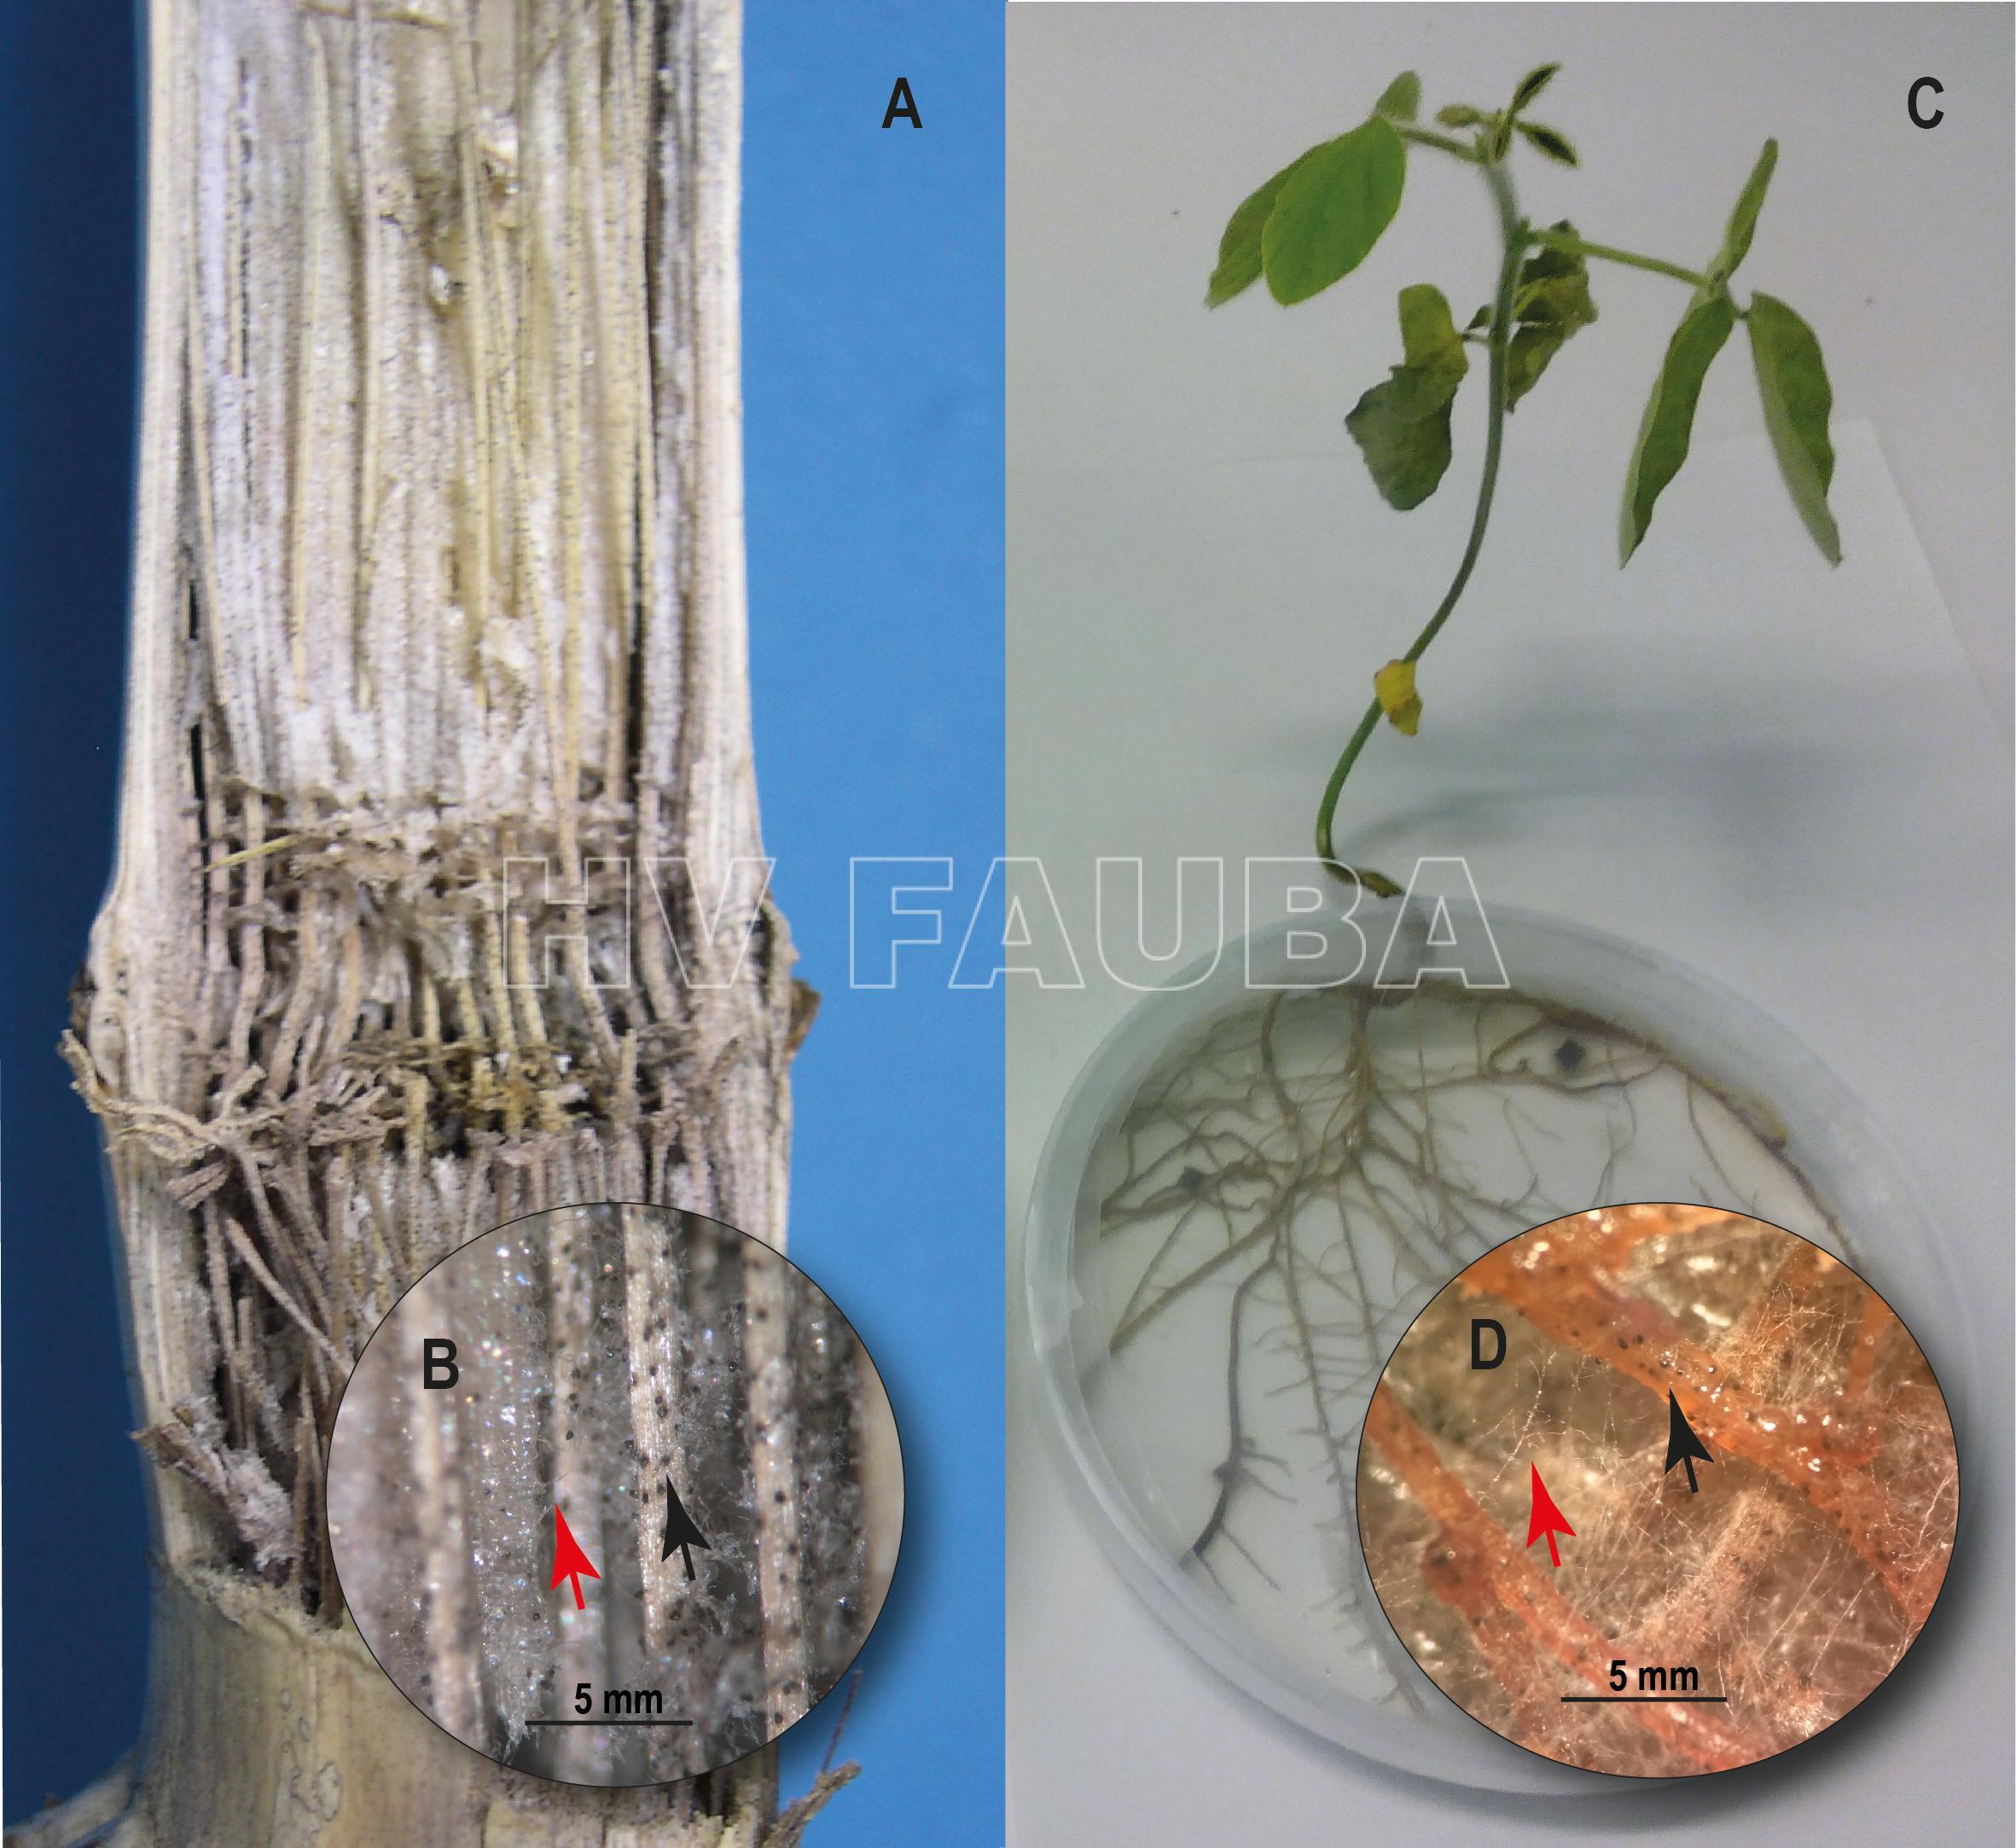 Pudrición carbonosa en maíz (Zea mays L.) y soja (Glycine max). (A) Interior del tallo del maíz que muestra una decoloración grisáceo-negra y desgarro de los haces vasculares. (B) Se desarrollaron hifas de M. phaseolina (flecha roja) y microesclerocios en los ases vasculares del tallo del maíz (flecha negra). (C) Planta de soja de 10 días después de la inoculación con M. phaseolina en condiciones de cultivo in vitro. (D) Hifas de M. phaseolina (flecha roja) y microesclerocios desarrollados en raíces de soja (flecha negra). Autor: Marquez et al., 2021.